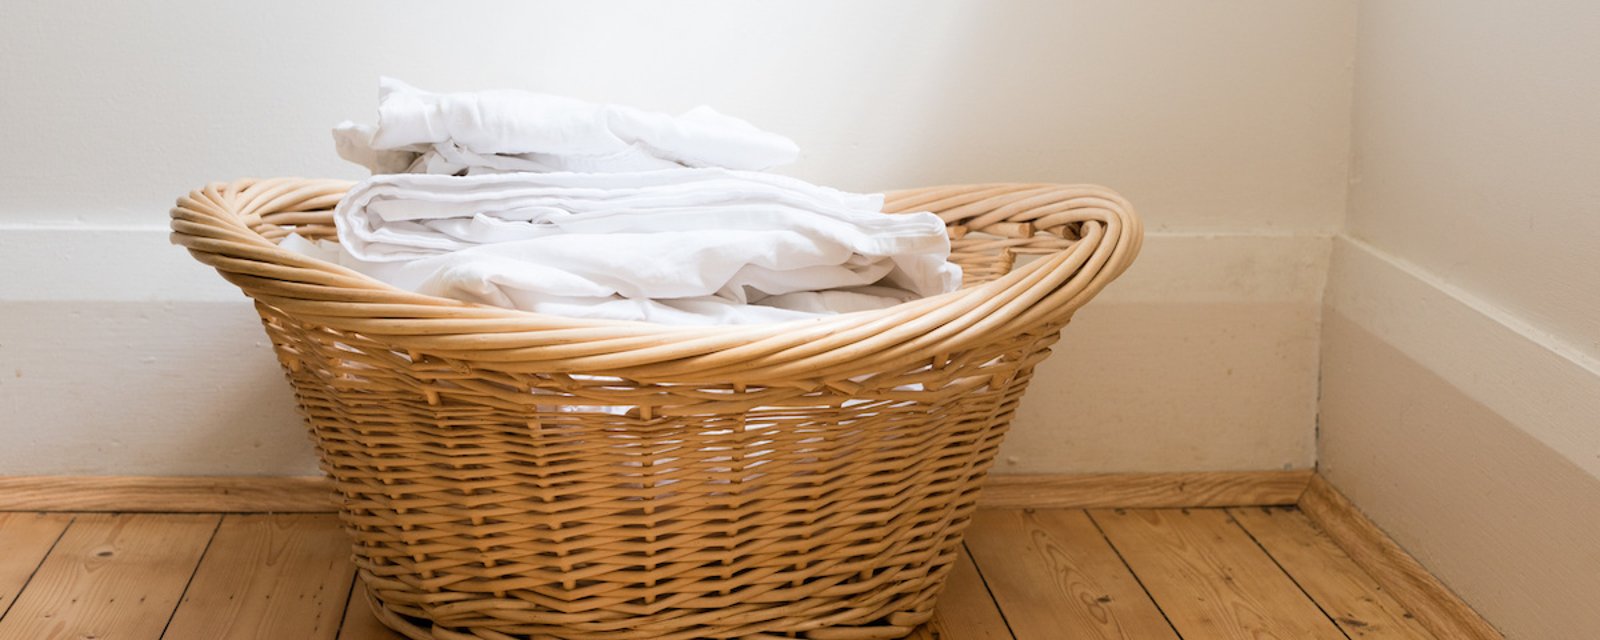 Une experte en blanchisserie recommande de laver nos draps une fois par semaine minimum